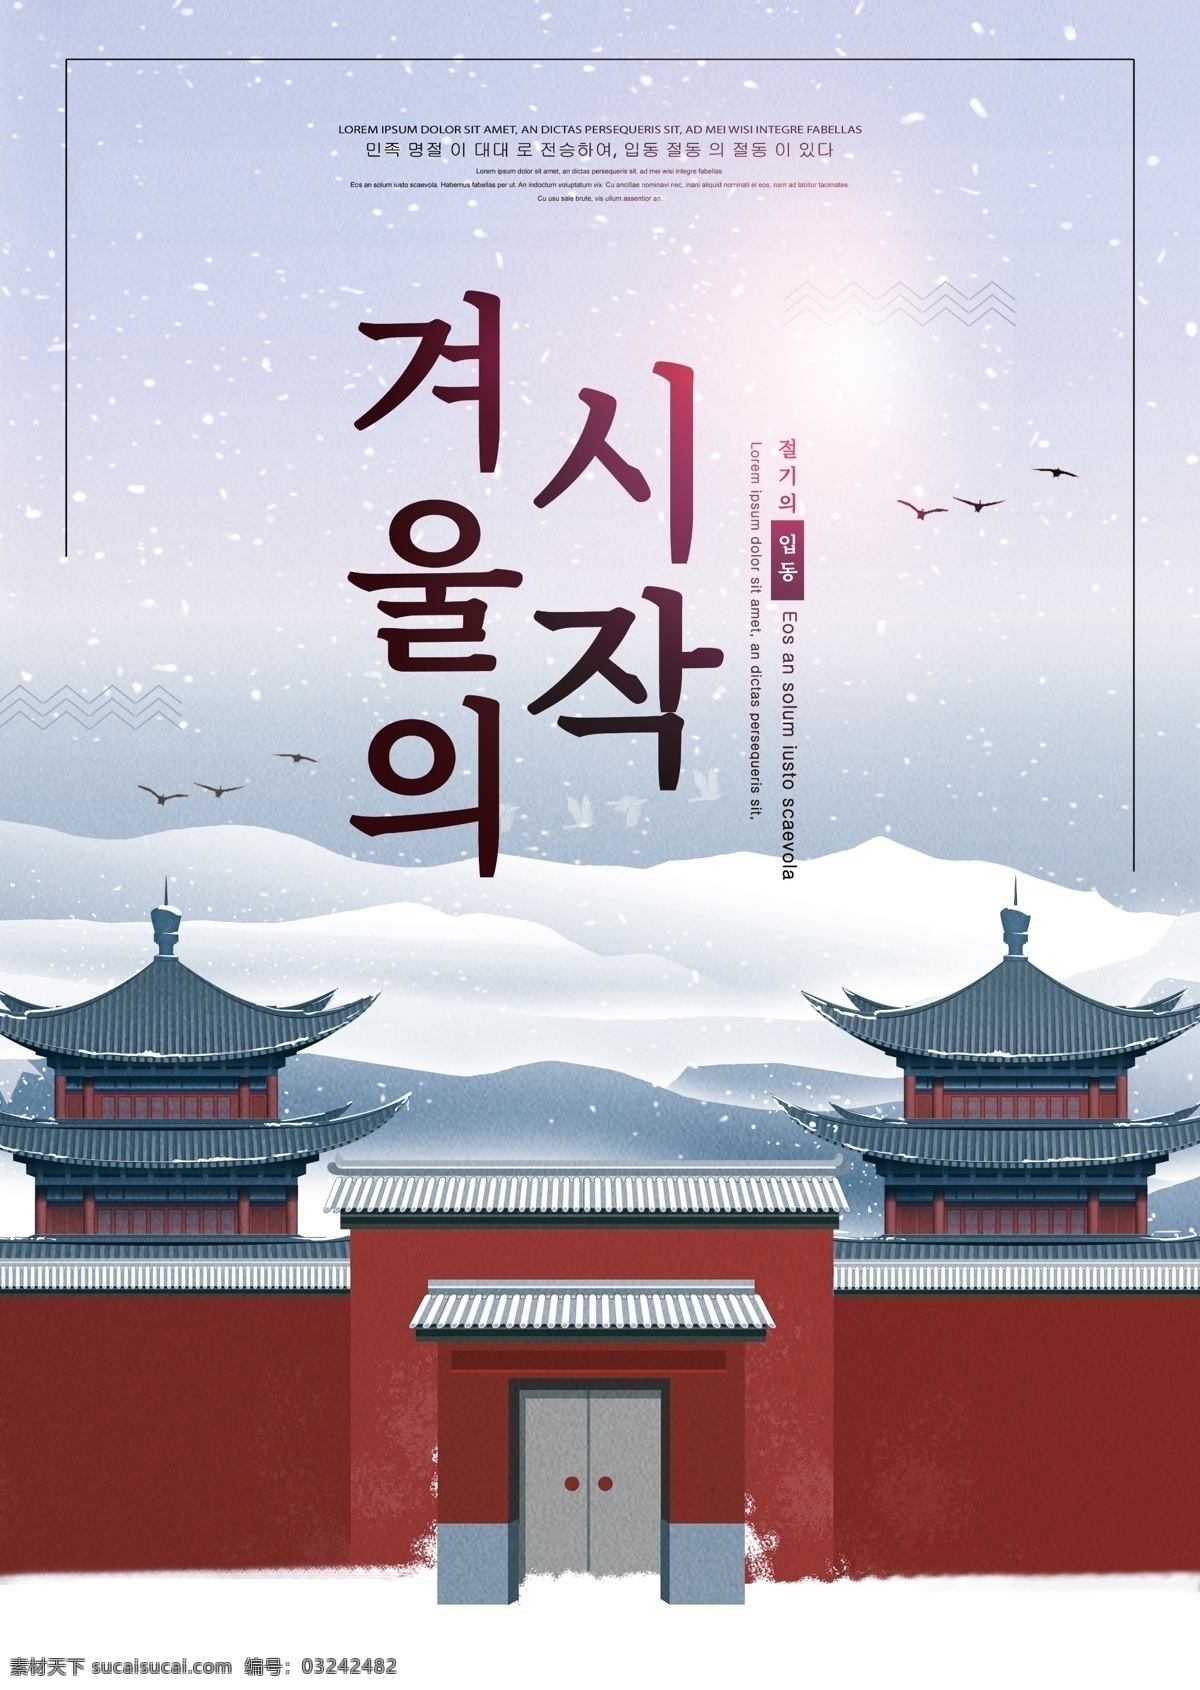 可以 韩国 传统节日 海报 高层建筑 灰色 节 红色 新 屋 厦门 蓝色 天空 白云 传统的 经典 手工制作 文化宫 一个盒子 门